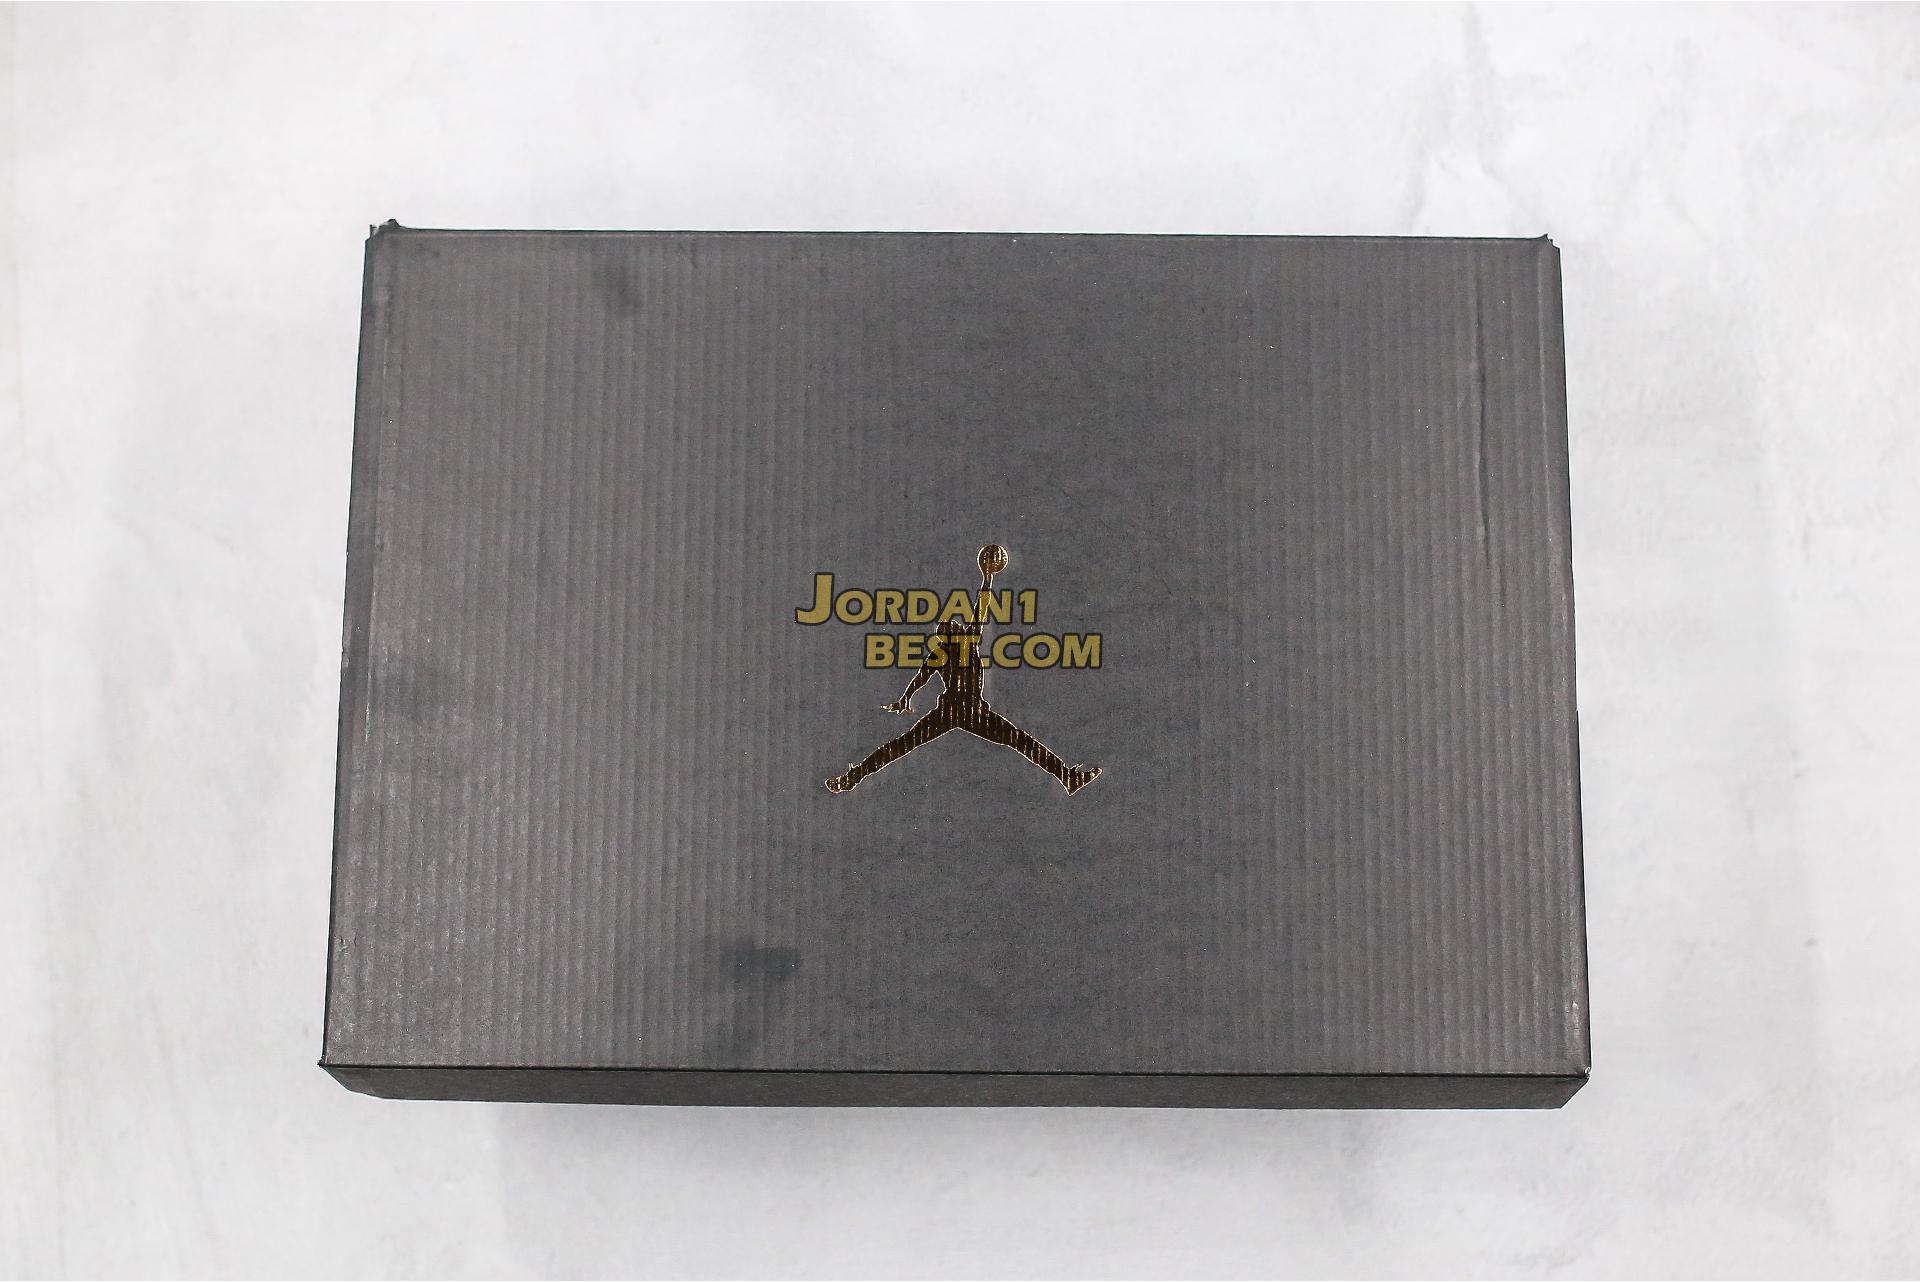 Air Jordan 7 Retro "Black Gloss" 313358-006 Mens